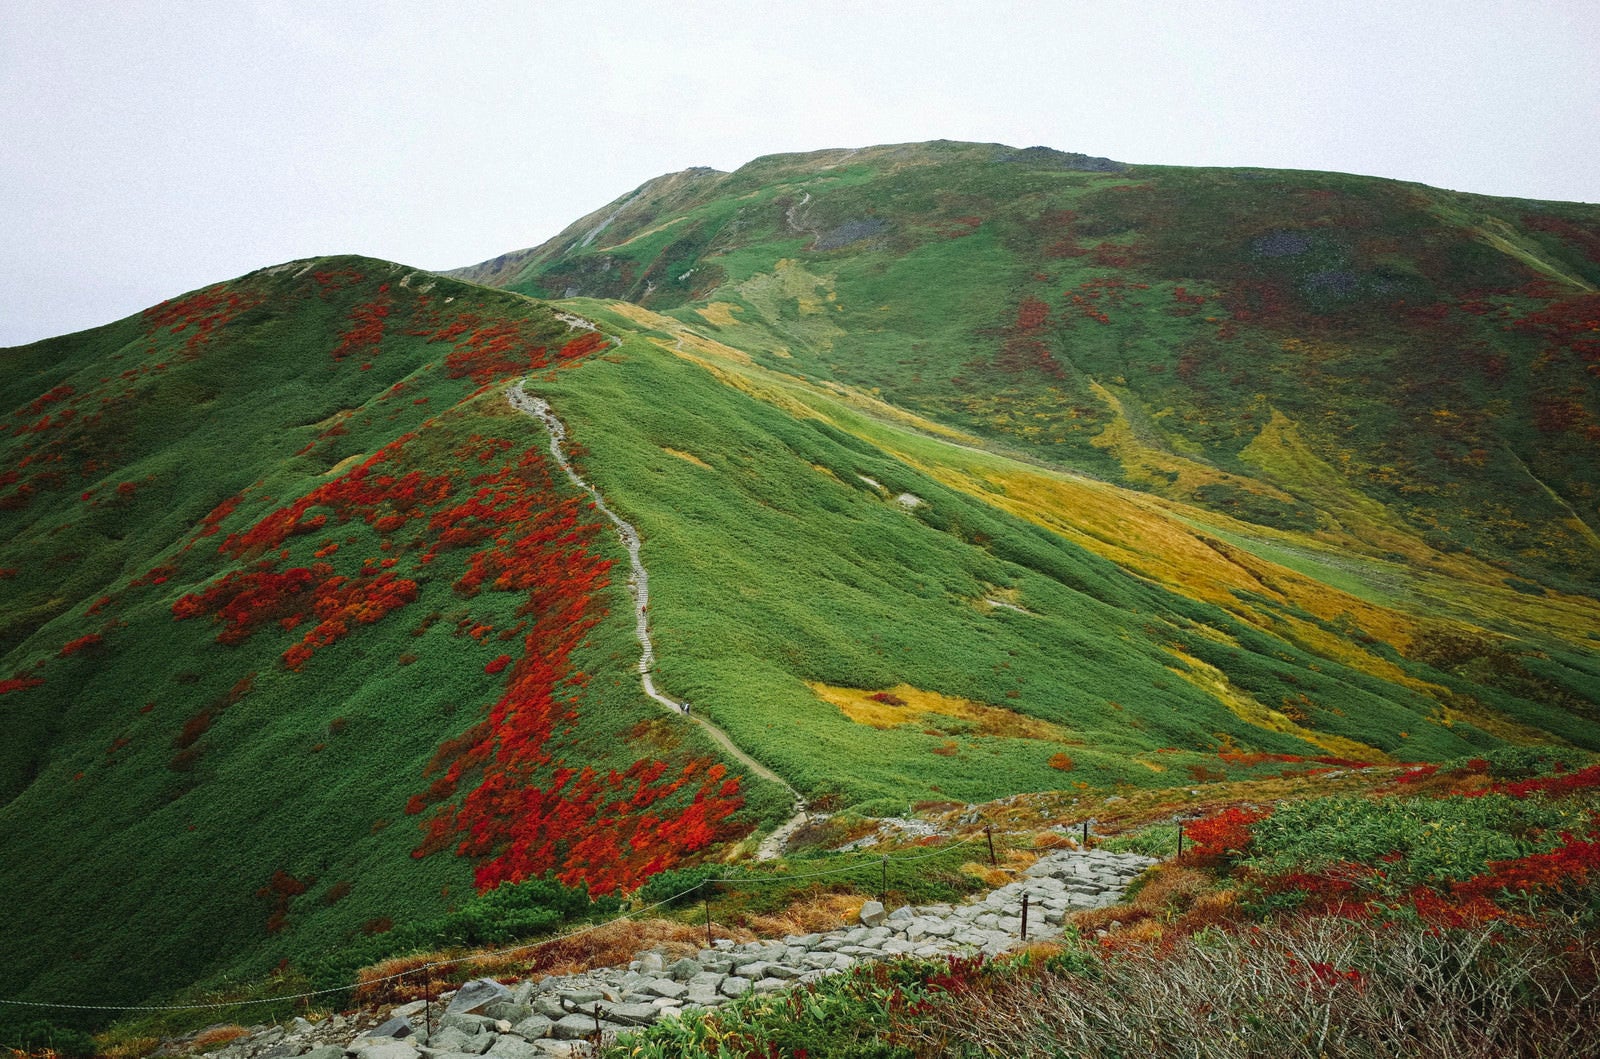 「赤と緑と黄色に彩られた月山の景色」の写真